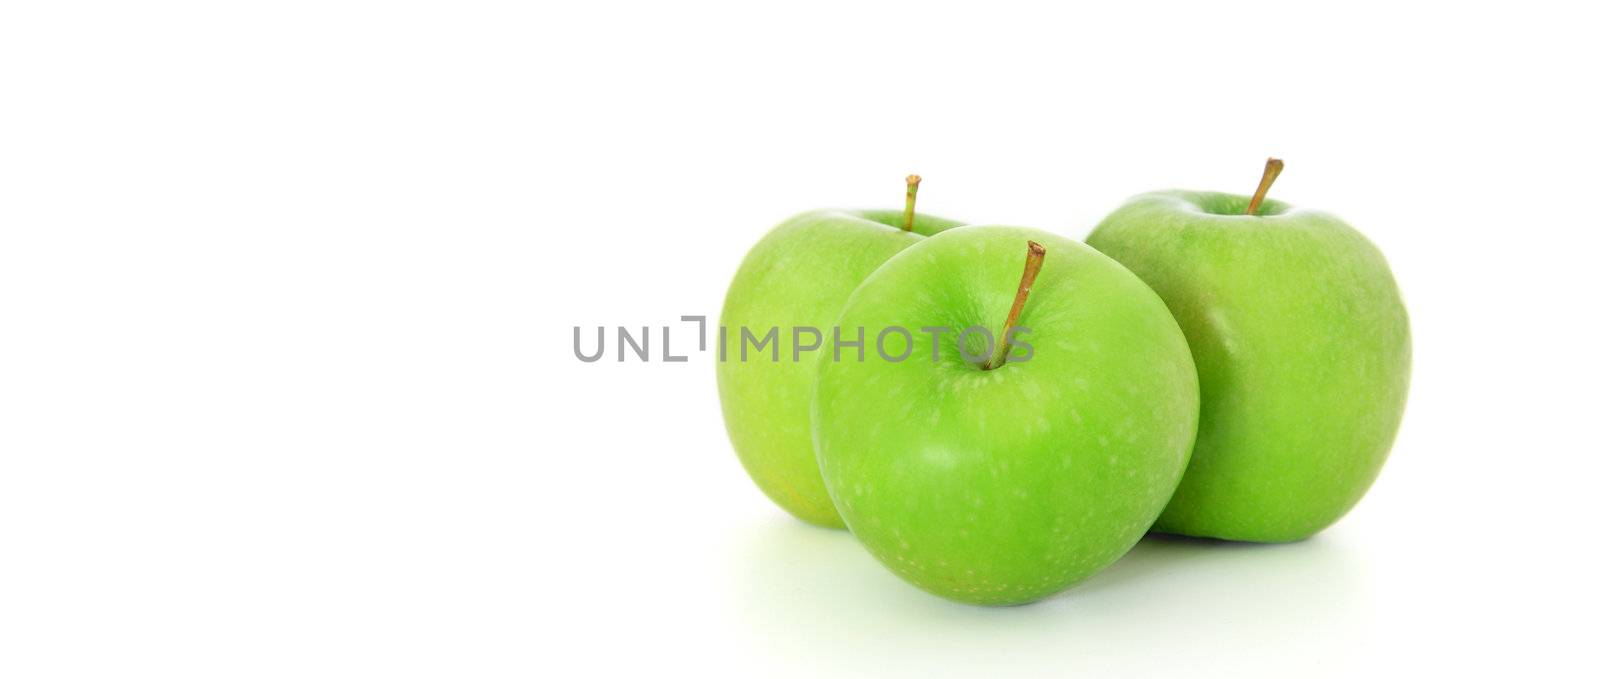 Green apples by kaarsten